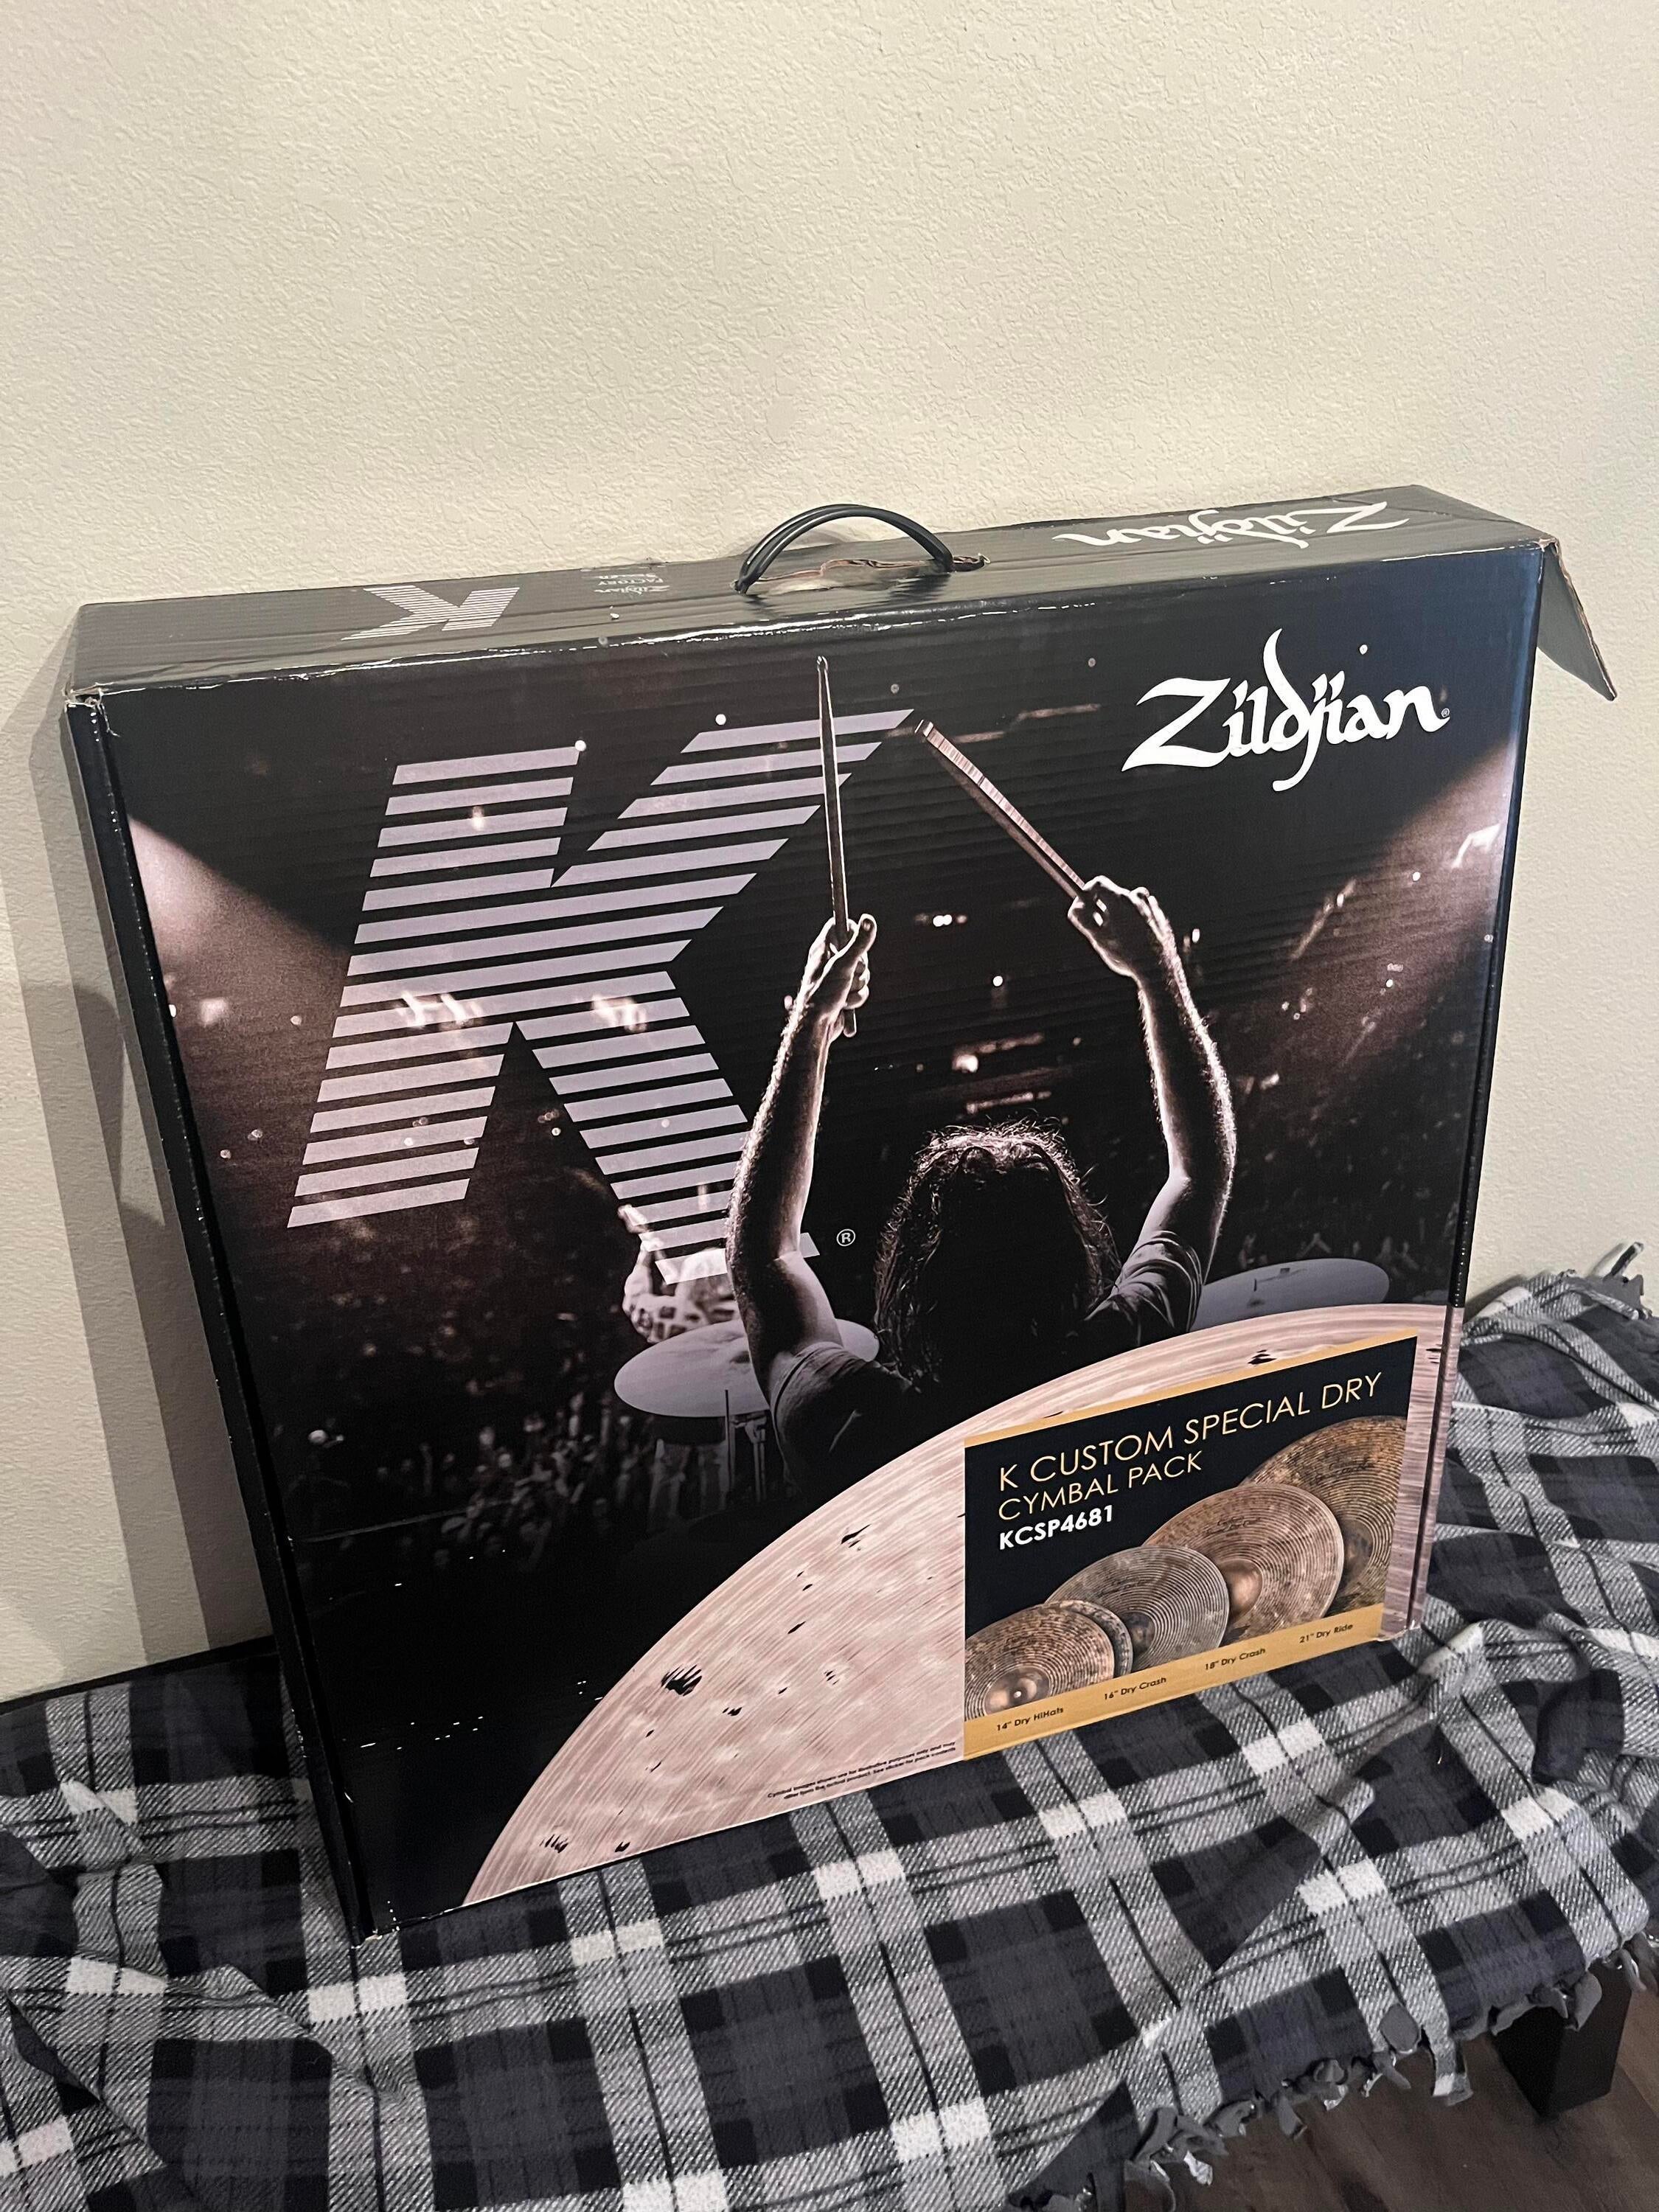 Used Zildjian K Custom Special Dry Cymbal Sweetwater's Gear Exchange